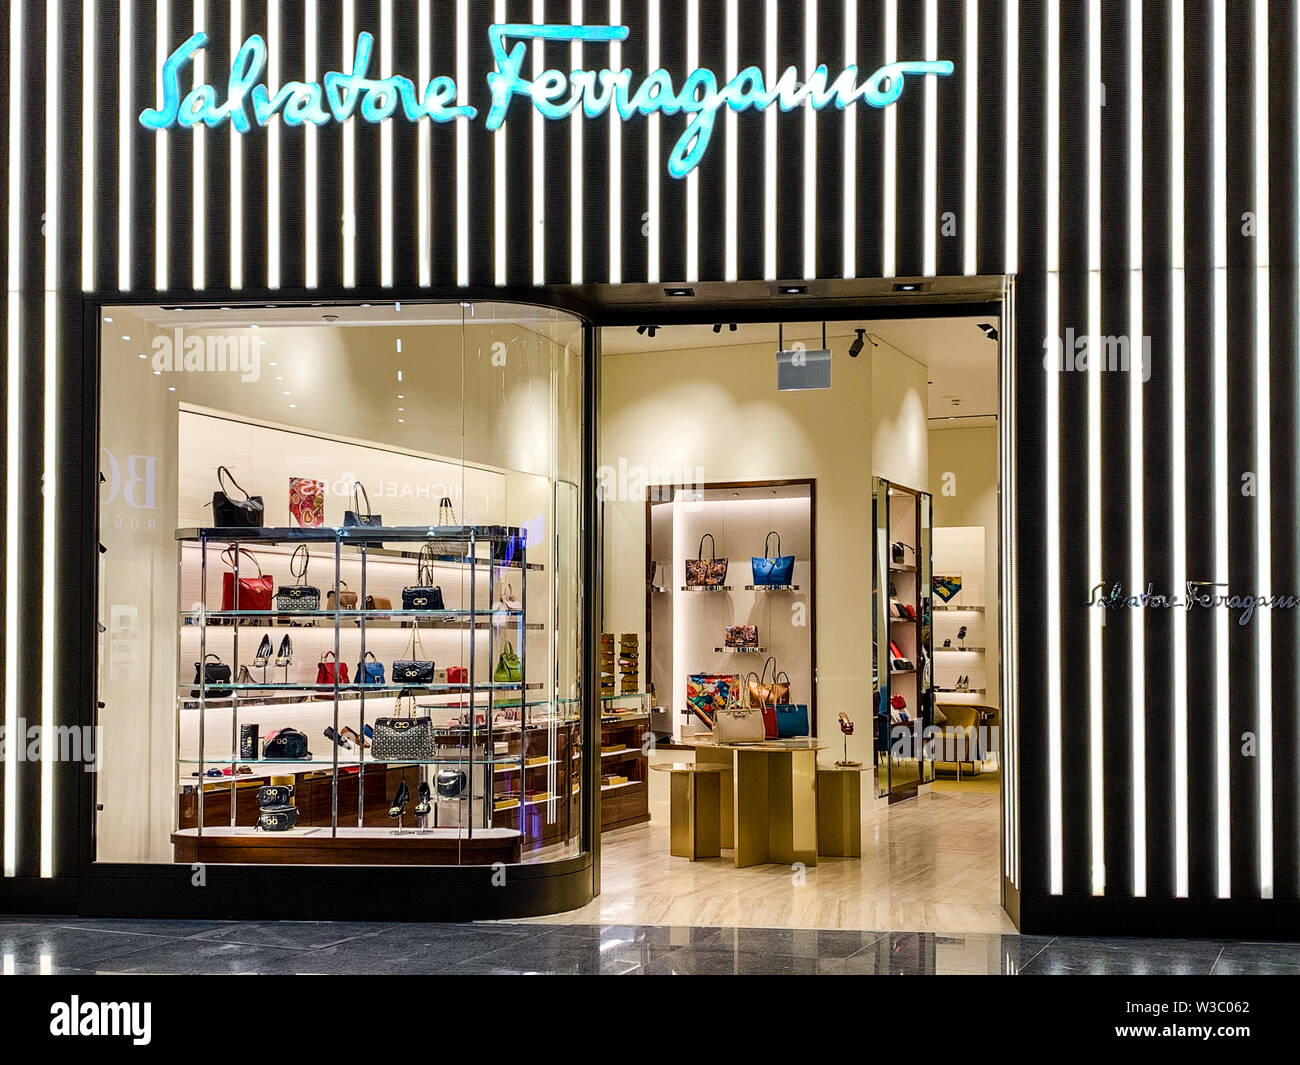 L'Italien Salvatore Ferragamo shop, avant la vente d'articles de luxe.  C'est un italien célèbre détaillant haut de gamme, en particulier pour les  chaussures. Istanbul/Turquie - Ap Photo Stock - Alamy